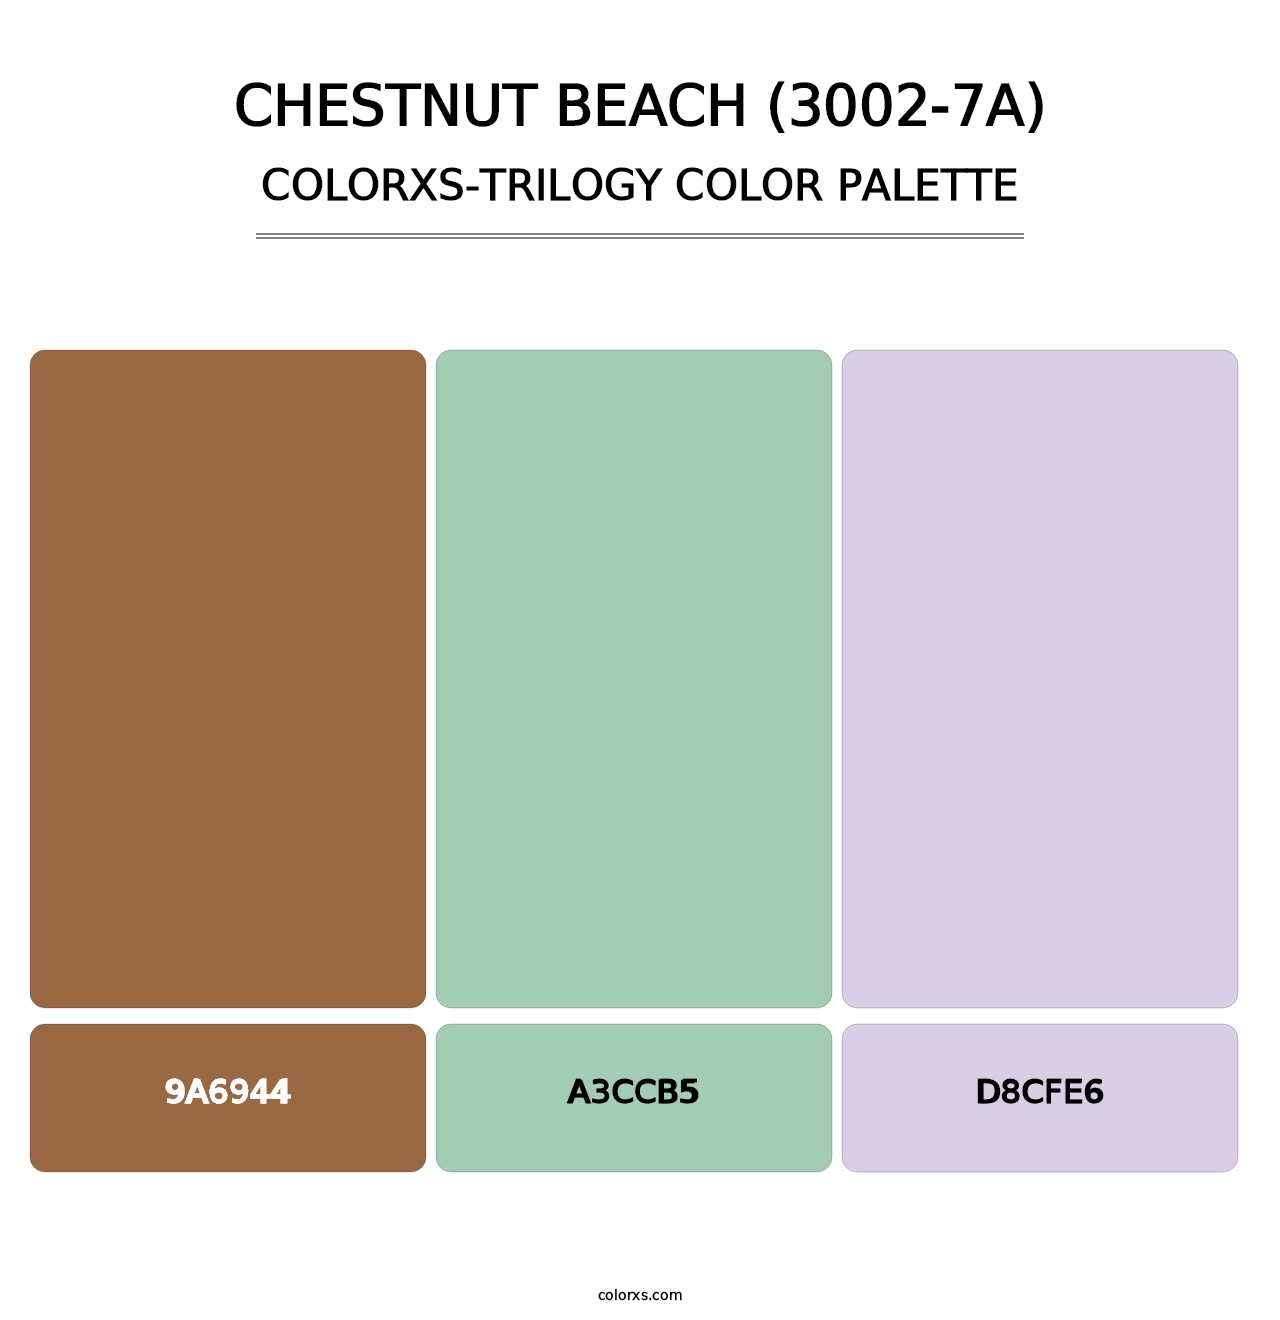 Chestnut Beach (3002-7A) - Colorxs Trilogy Palette